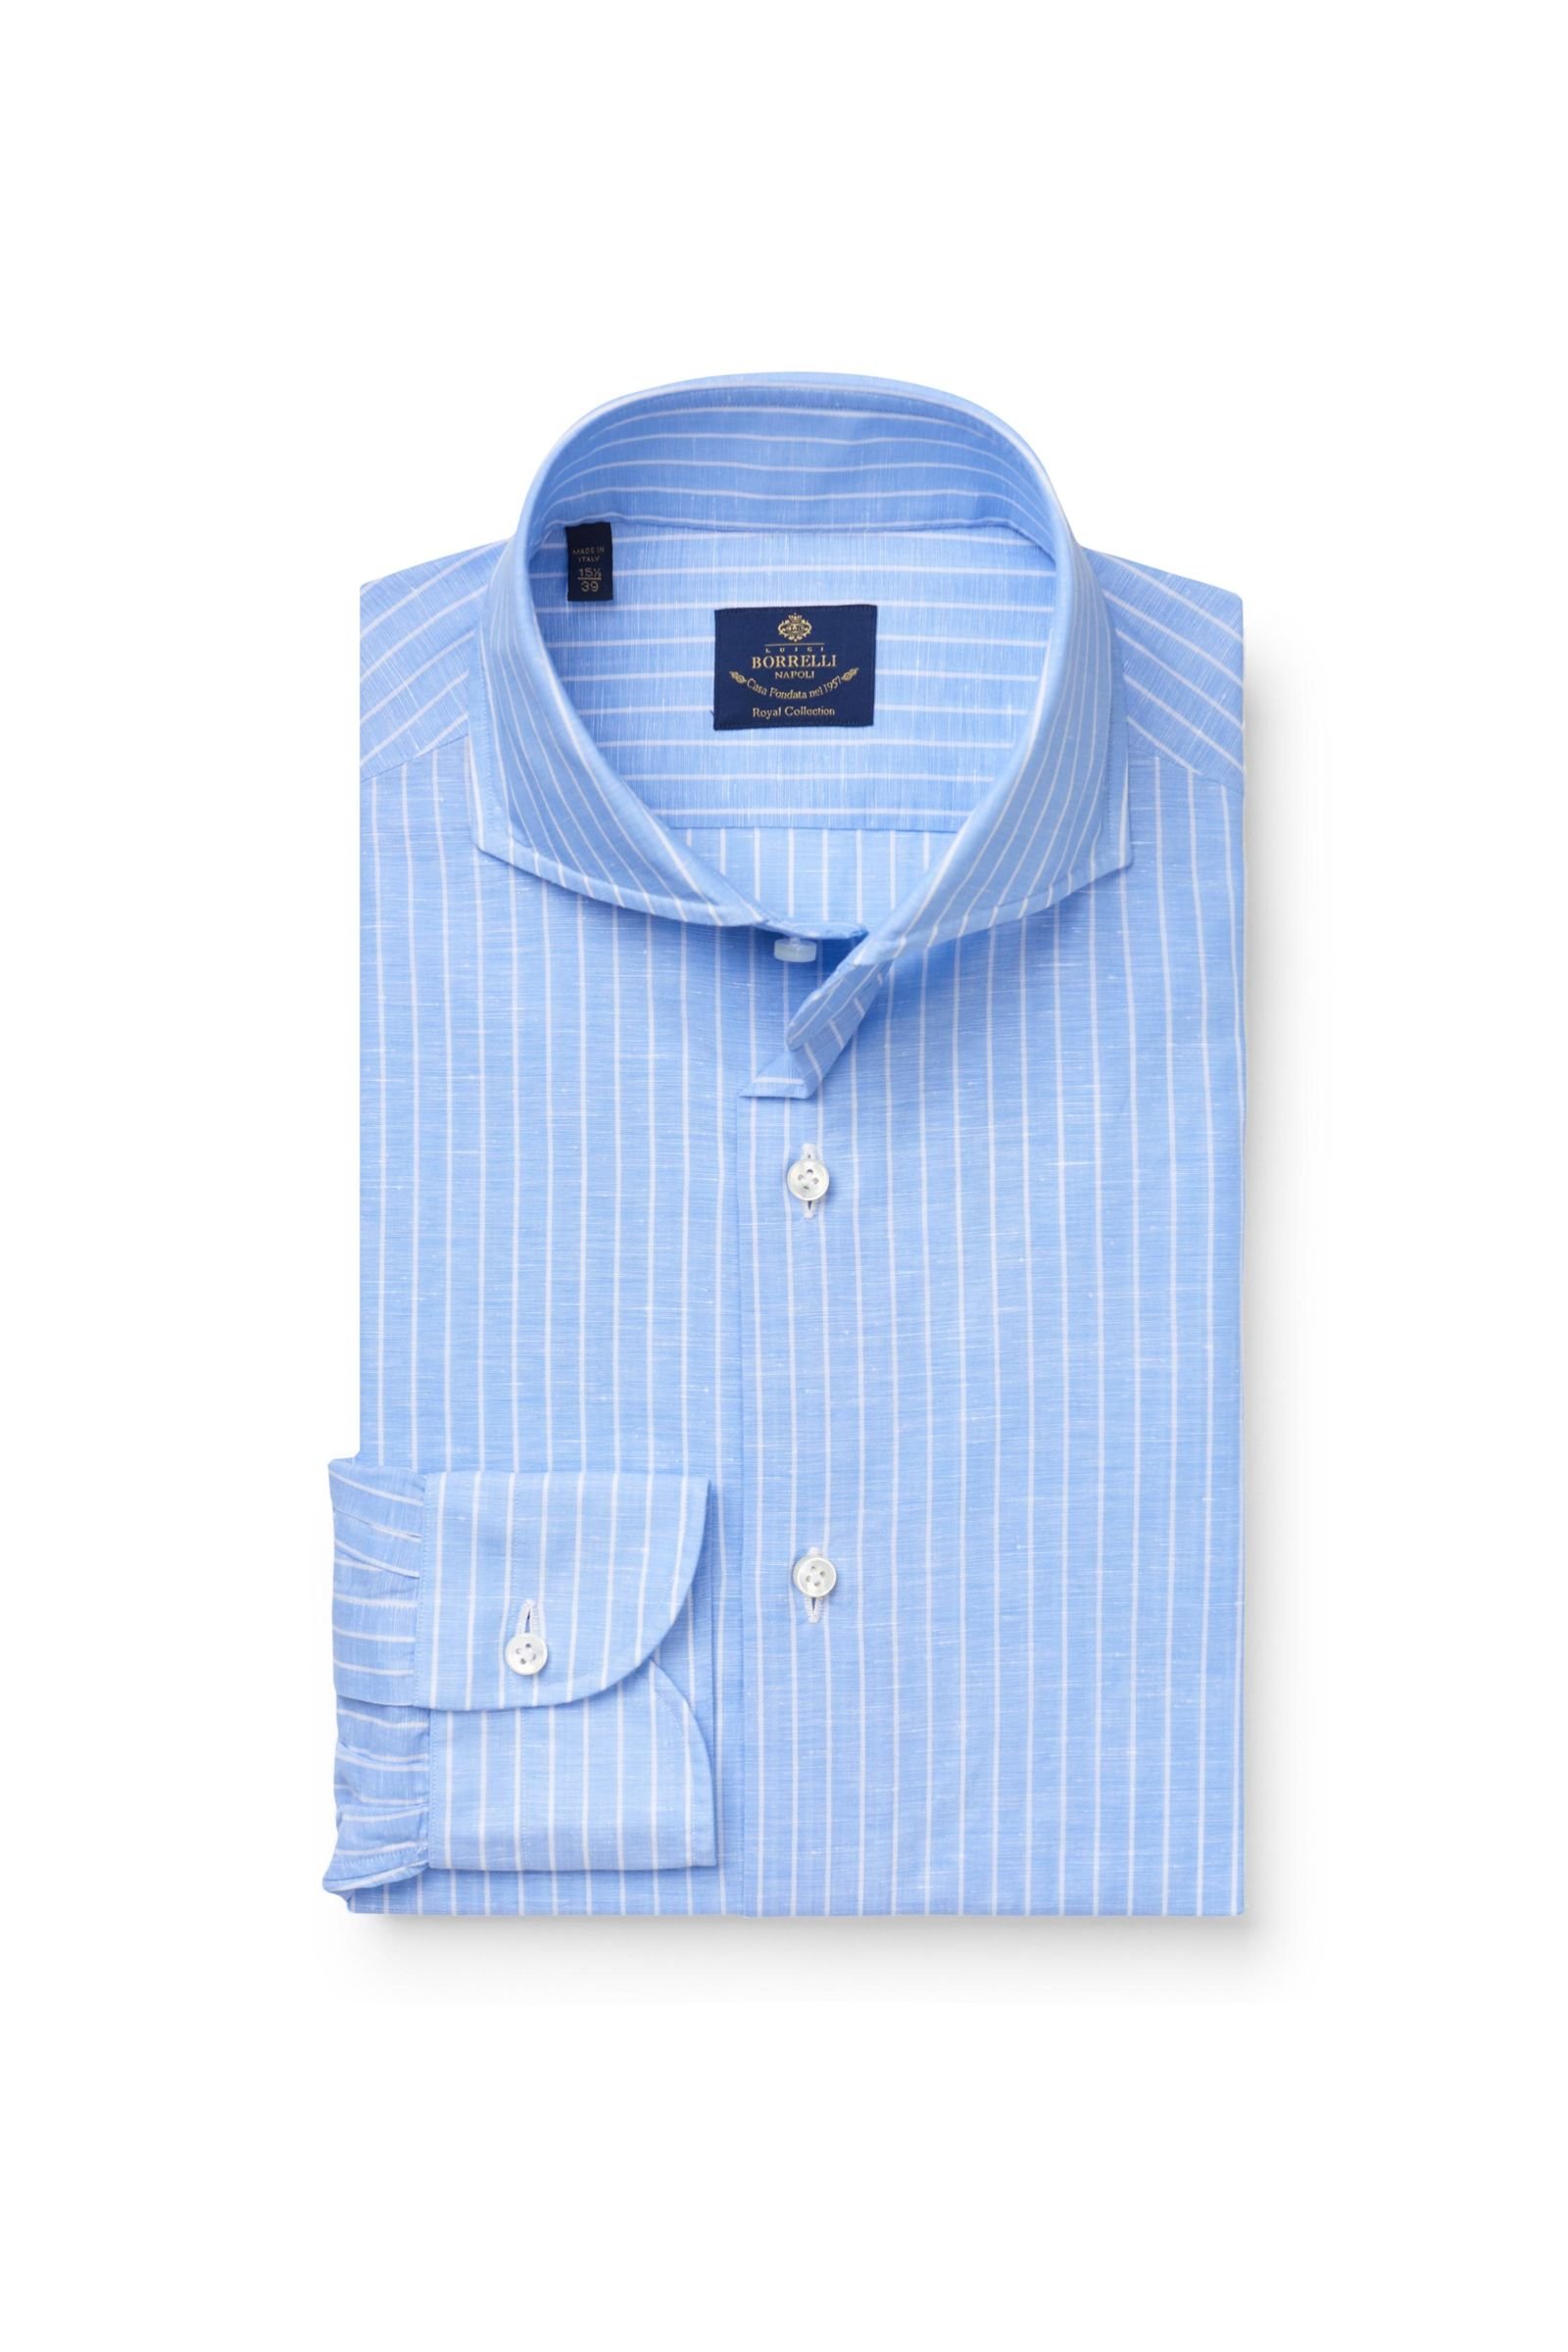 Business shirt 'Felice' shark collar light blue/white striped